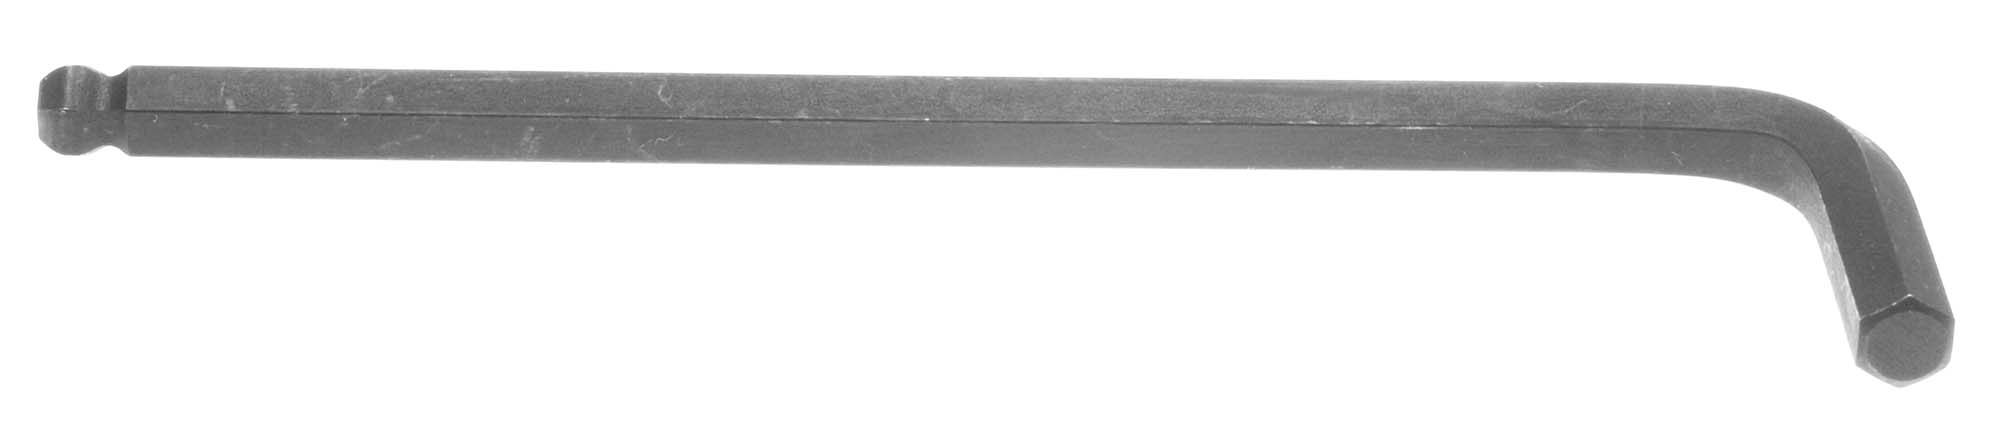 3/16" Bondhus Balldriver L-Wrench Hex Key